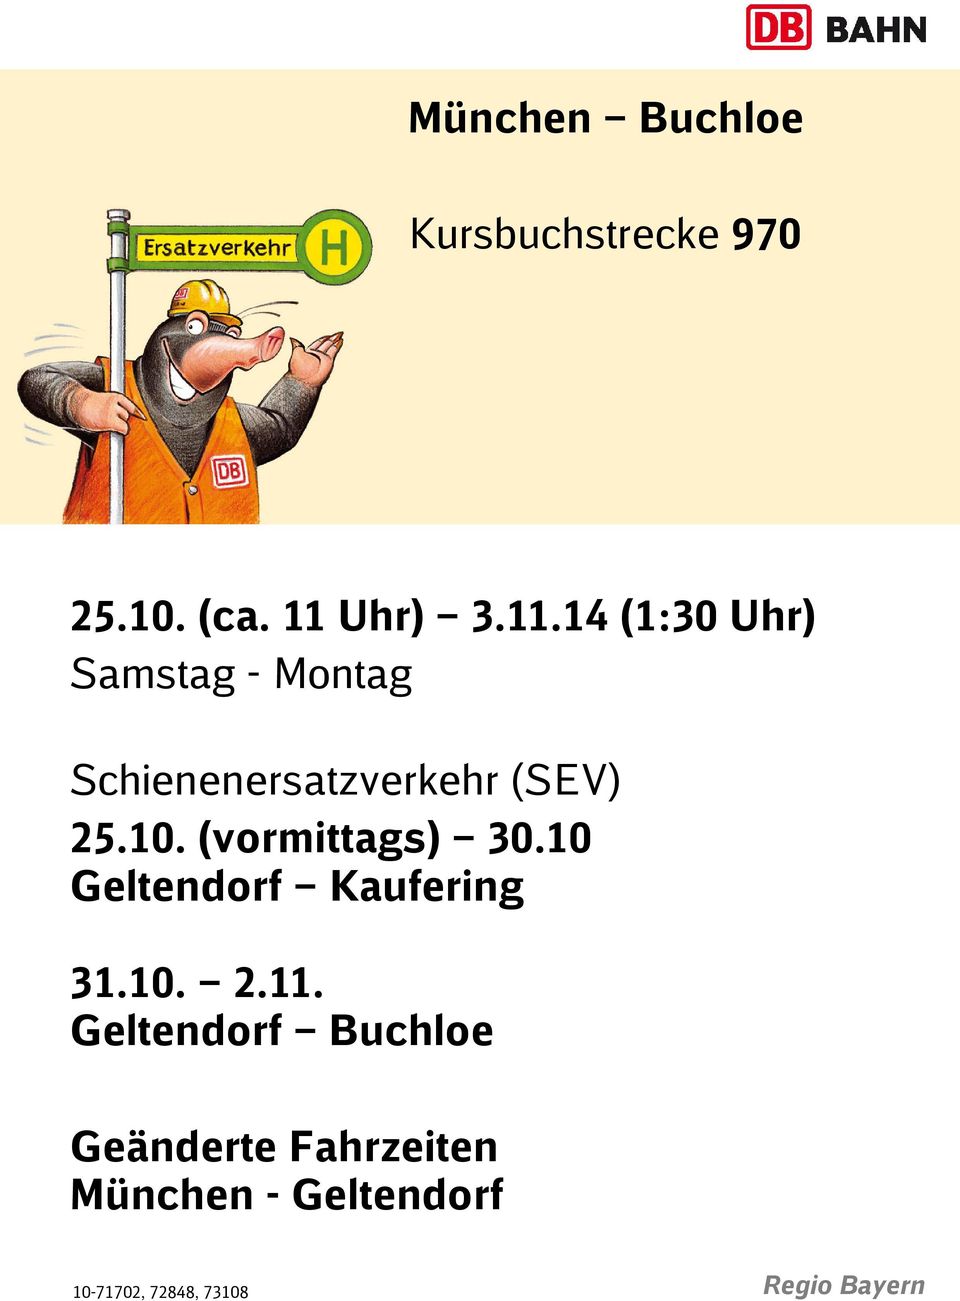 14 (1:30 Uhr) Samstag - Montag Schienenersatzverkehr (SEV) 25.10.